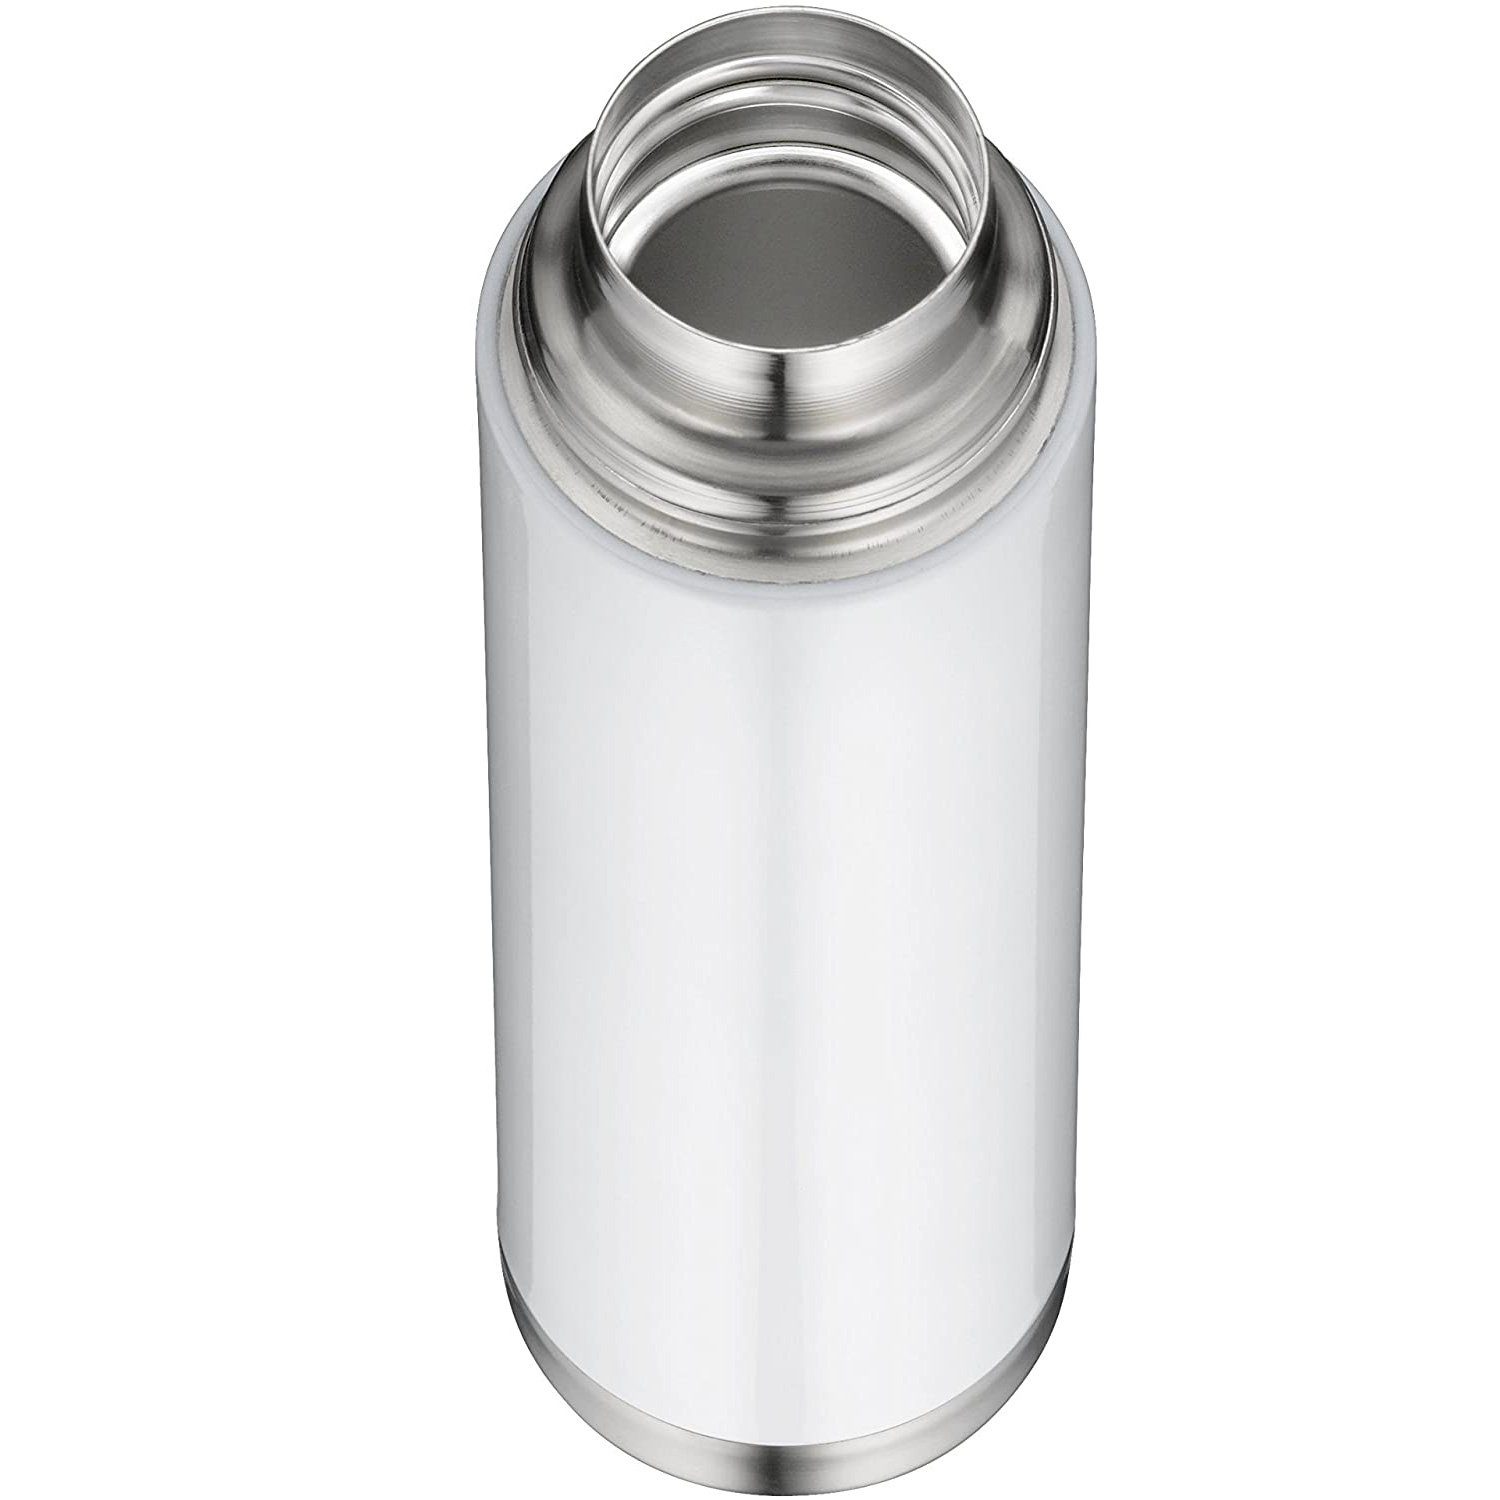 Alfi Isolierflasche perfectTherm Eco 0,75 mit Weiß Trinkbecher Liter